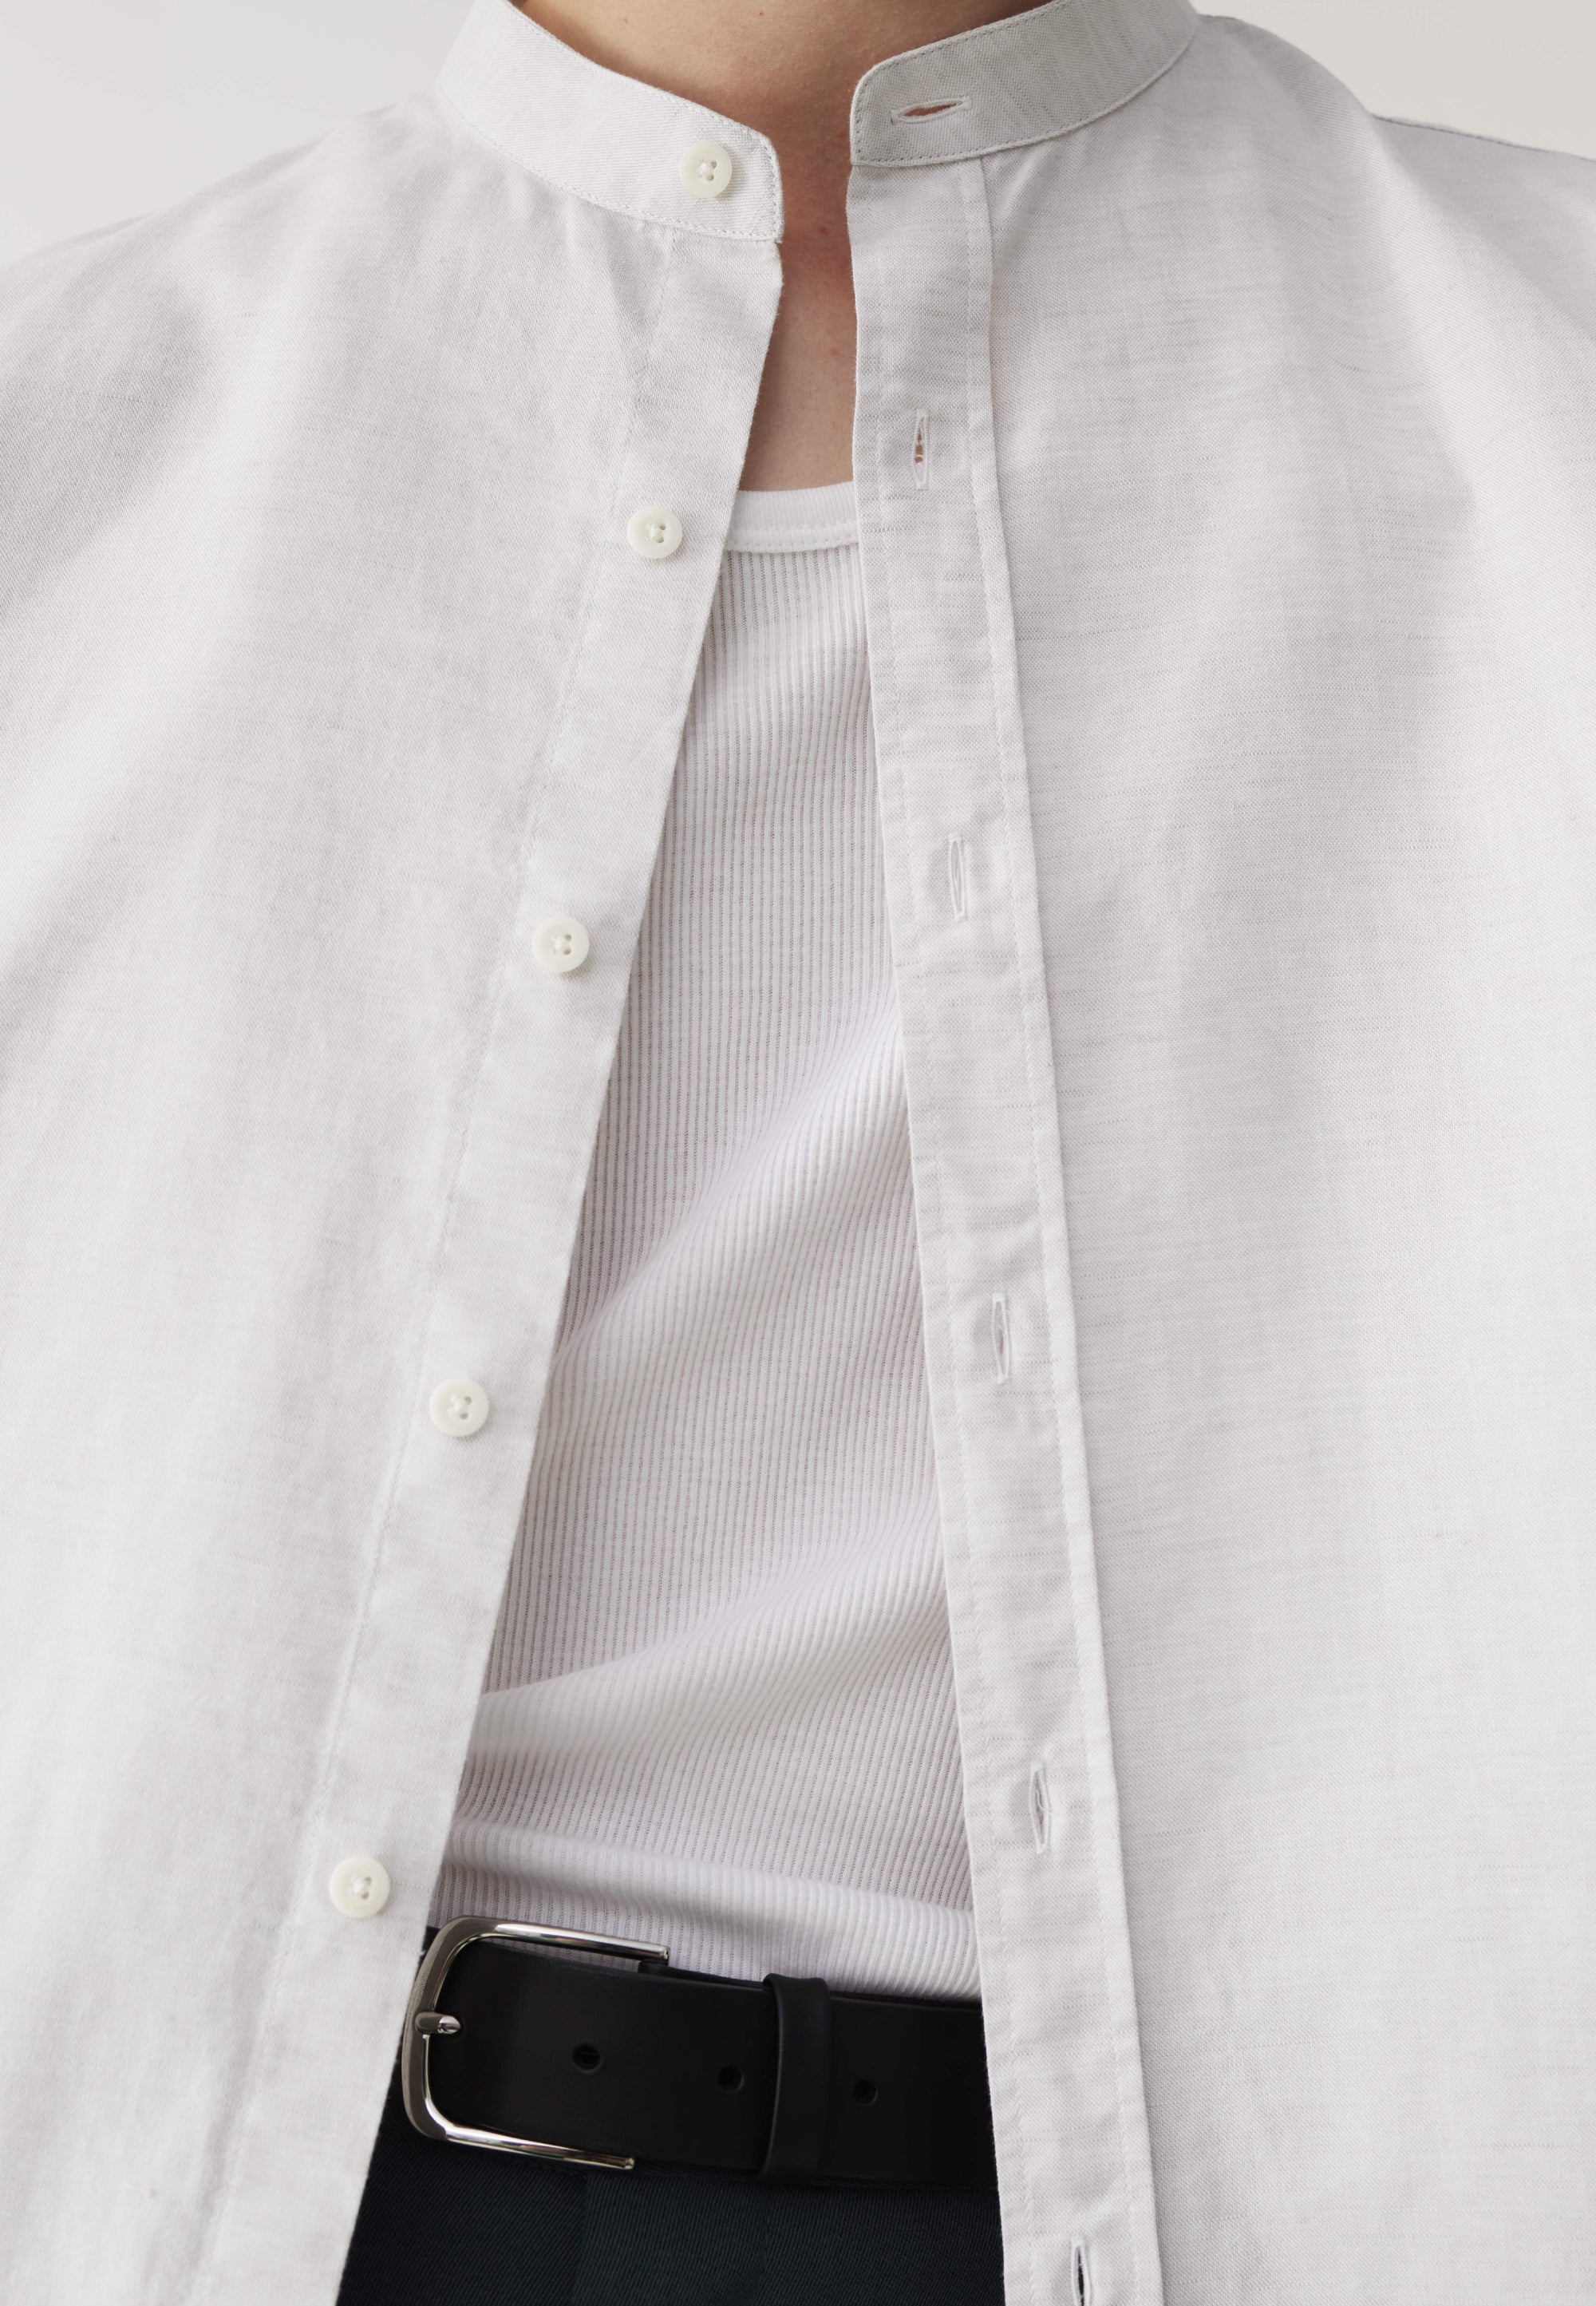 la chemise col mao blanc cassé détail tissu